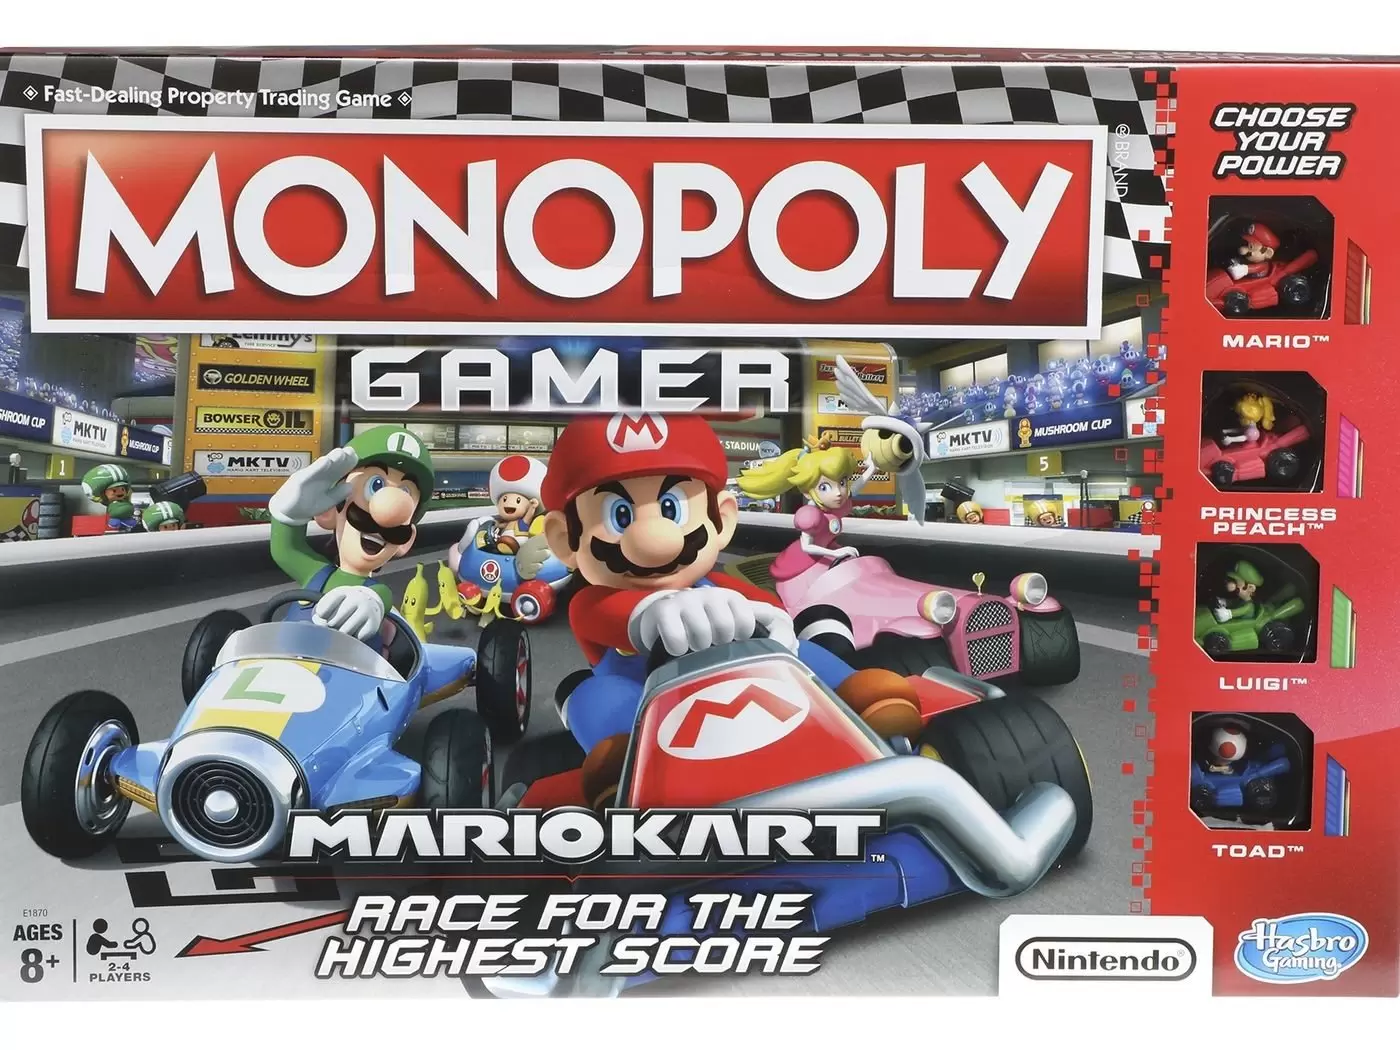 Monopoly Jeux vidéo - Monopoly Gamer - Mario Kart